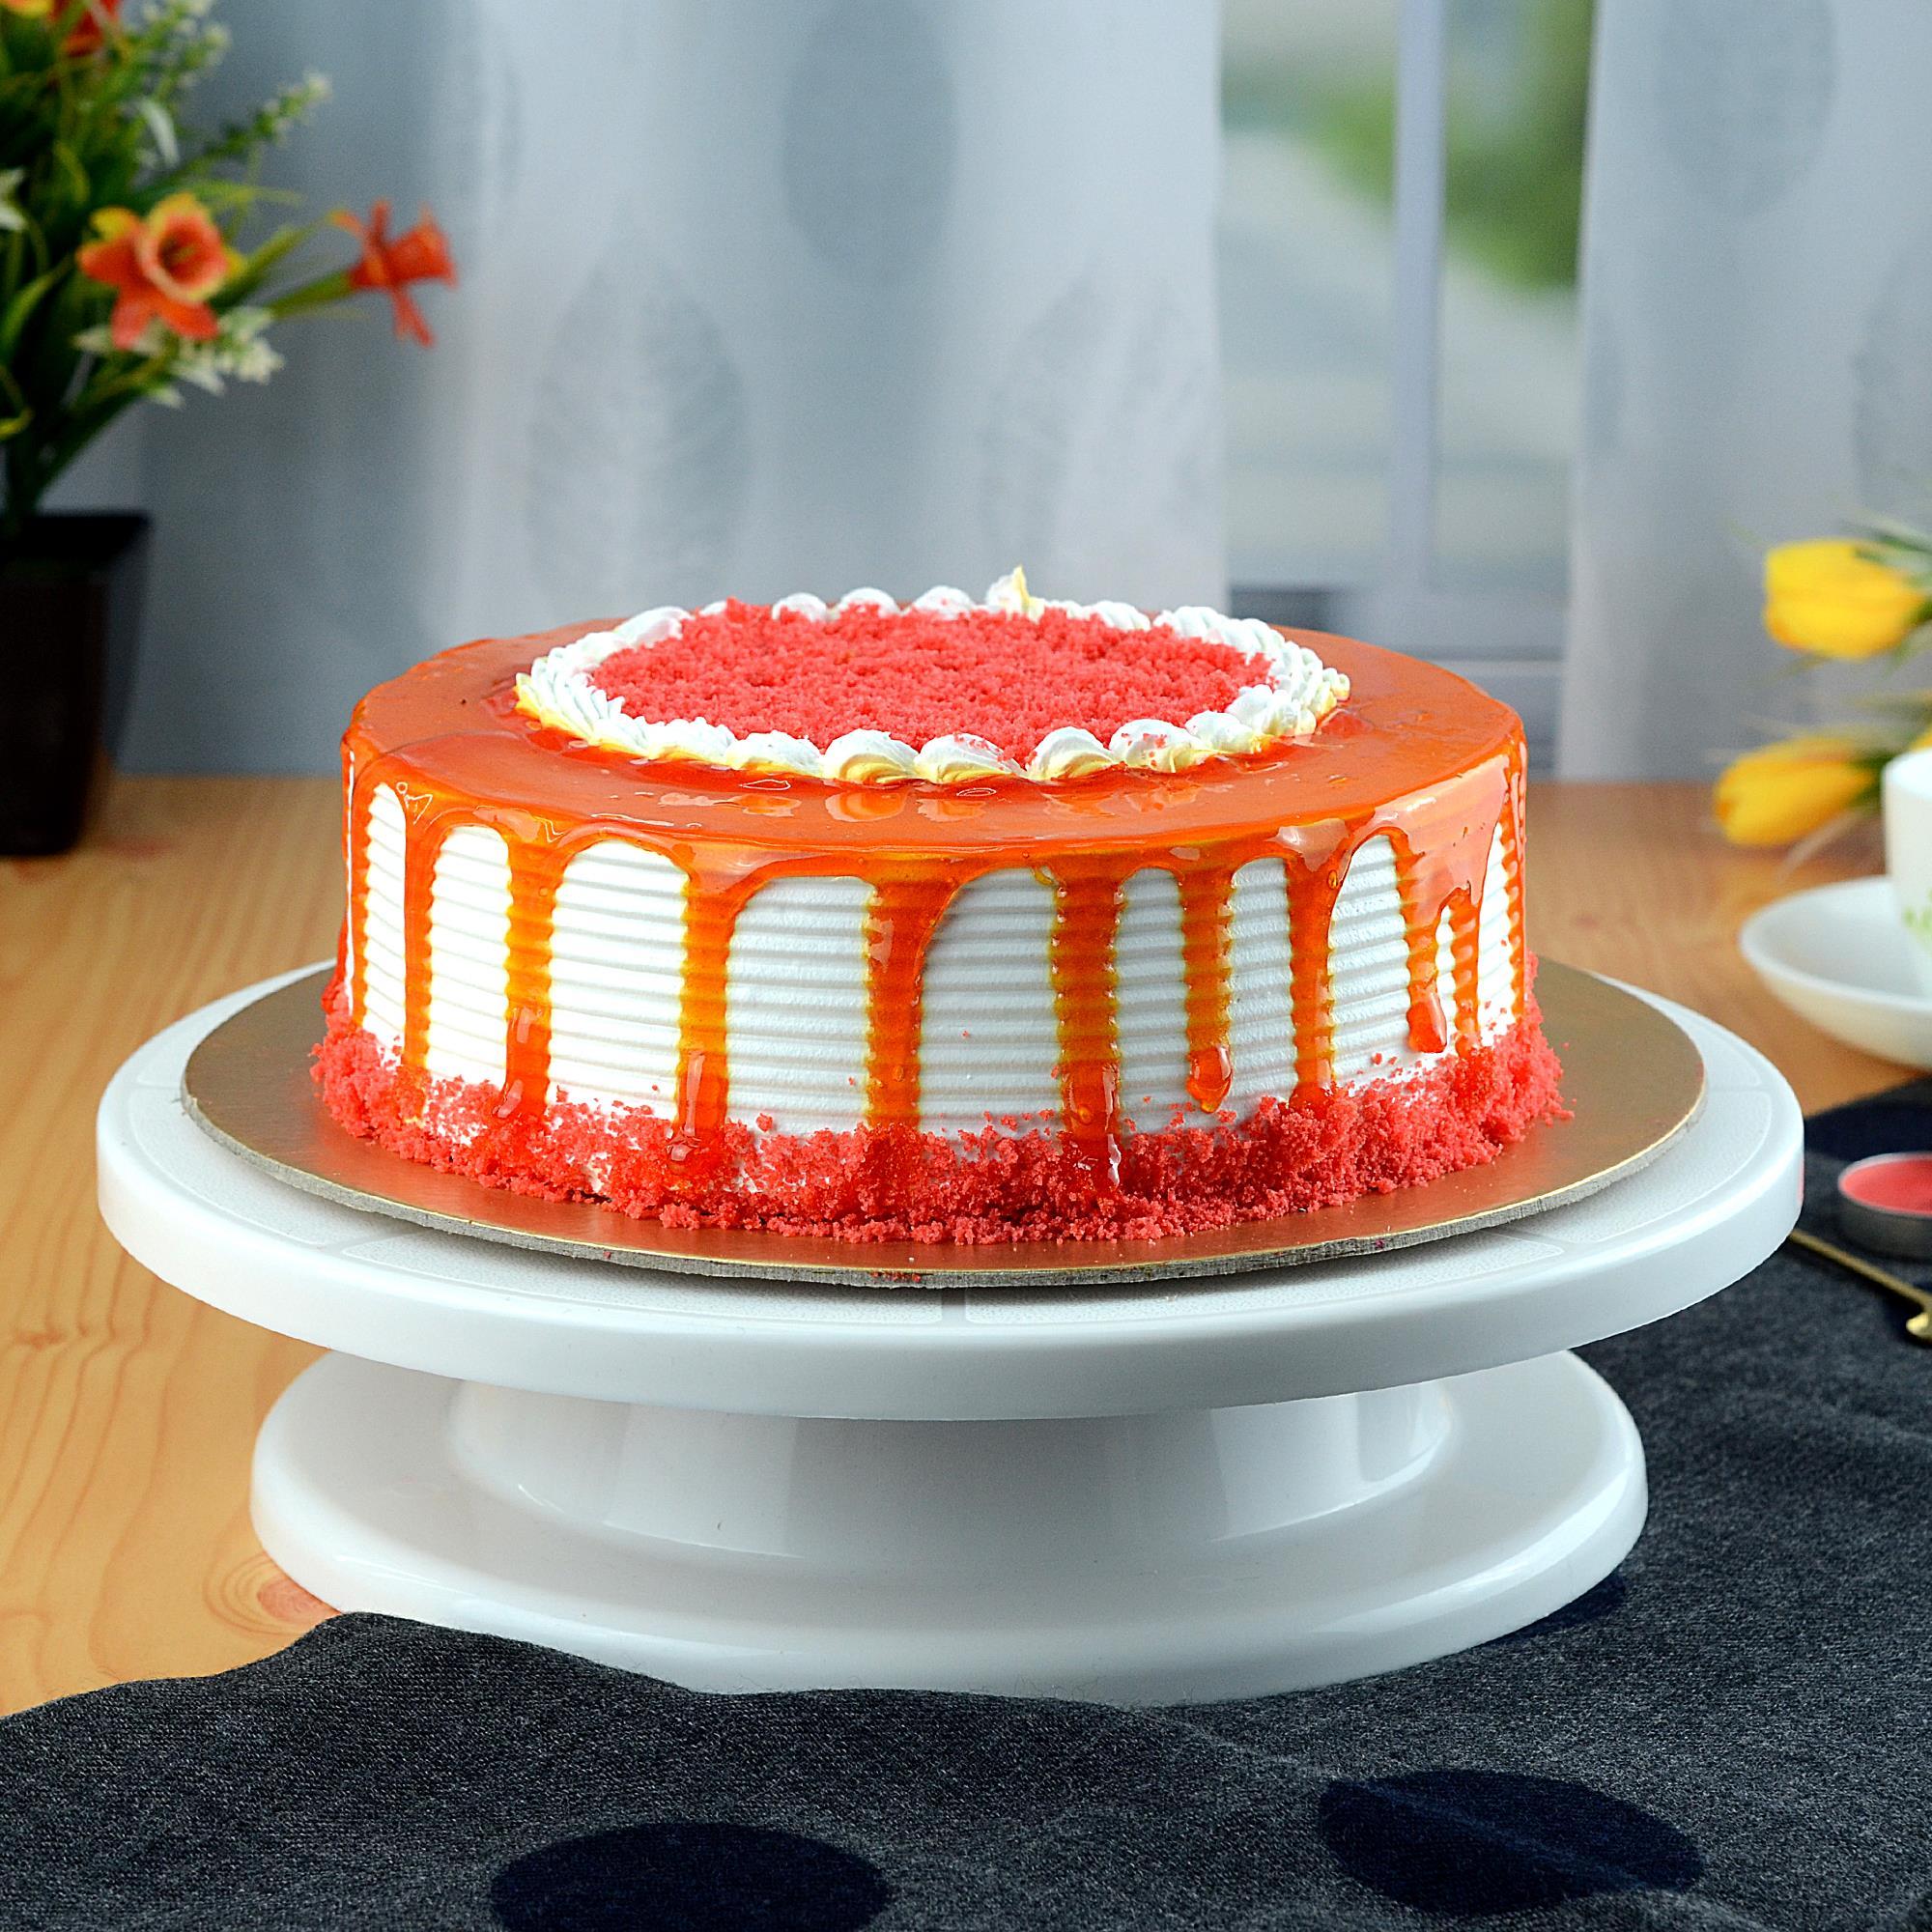 Red Velvet Cake - The Cake Shoppe